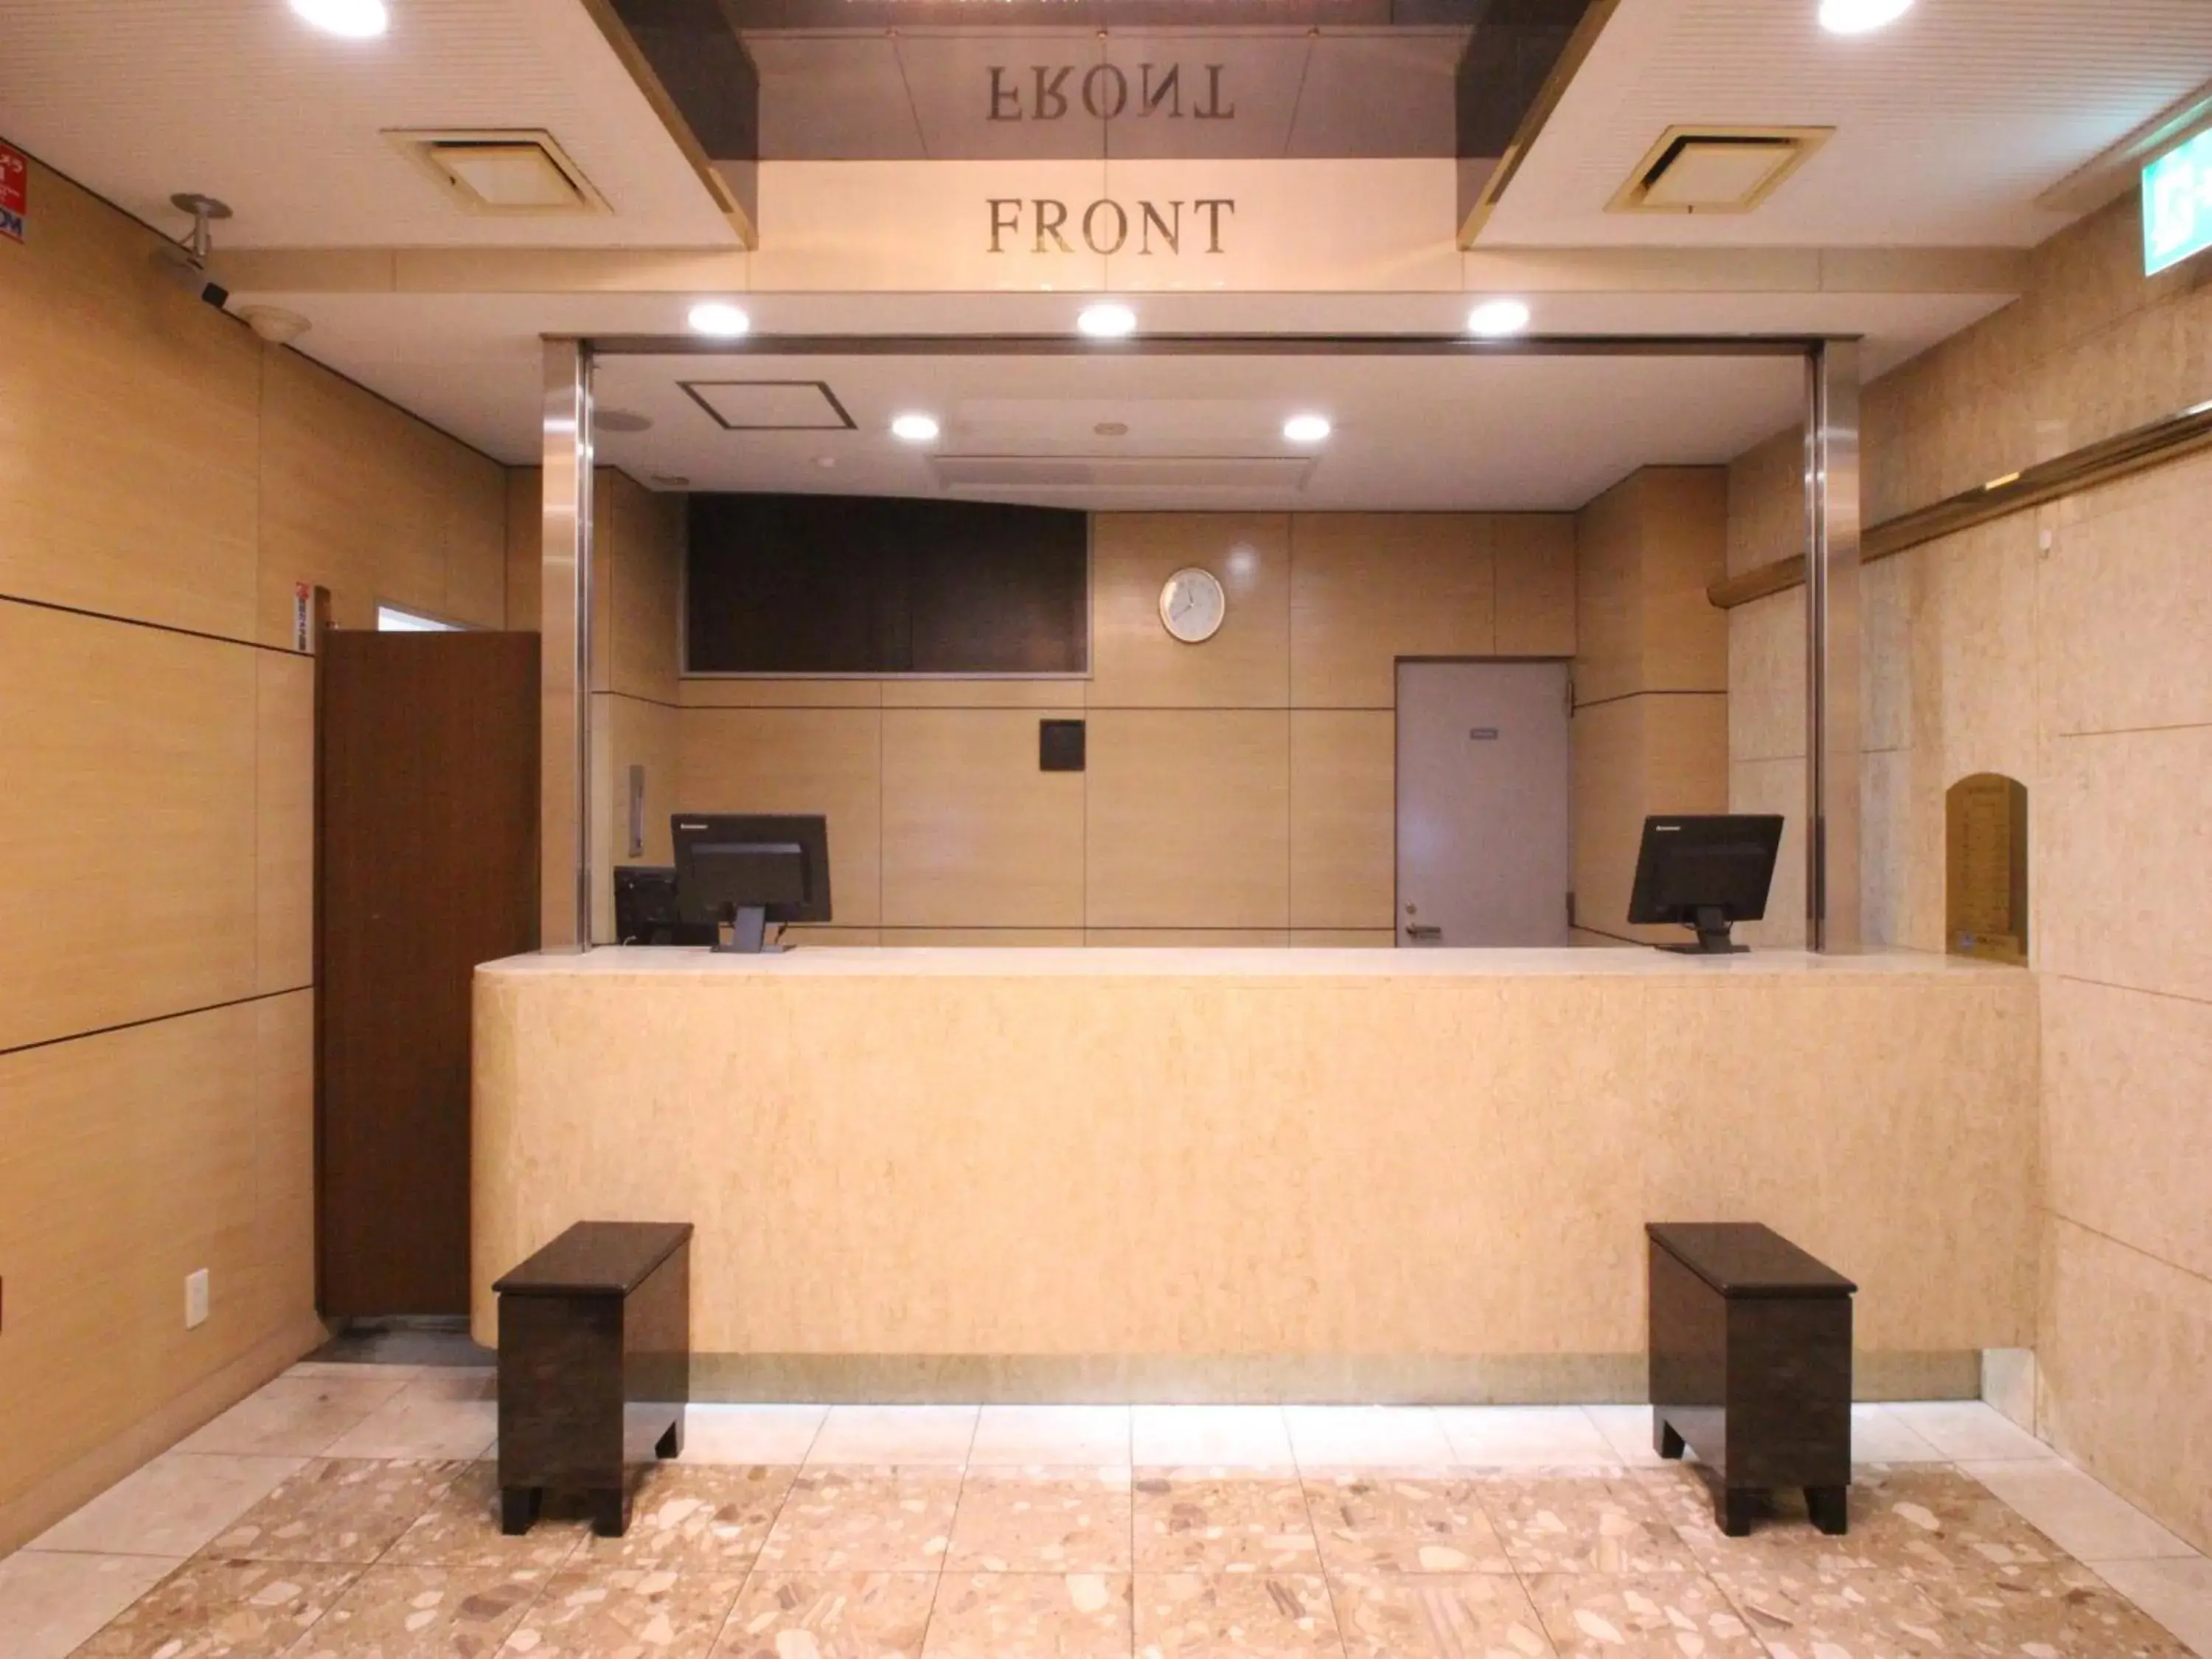 Lobby or reception, Lobby/Reception in APA Hotel Komatsu